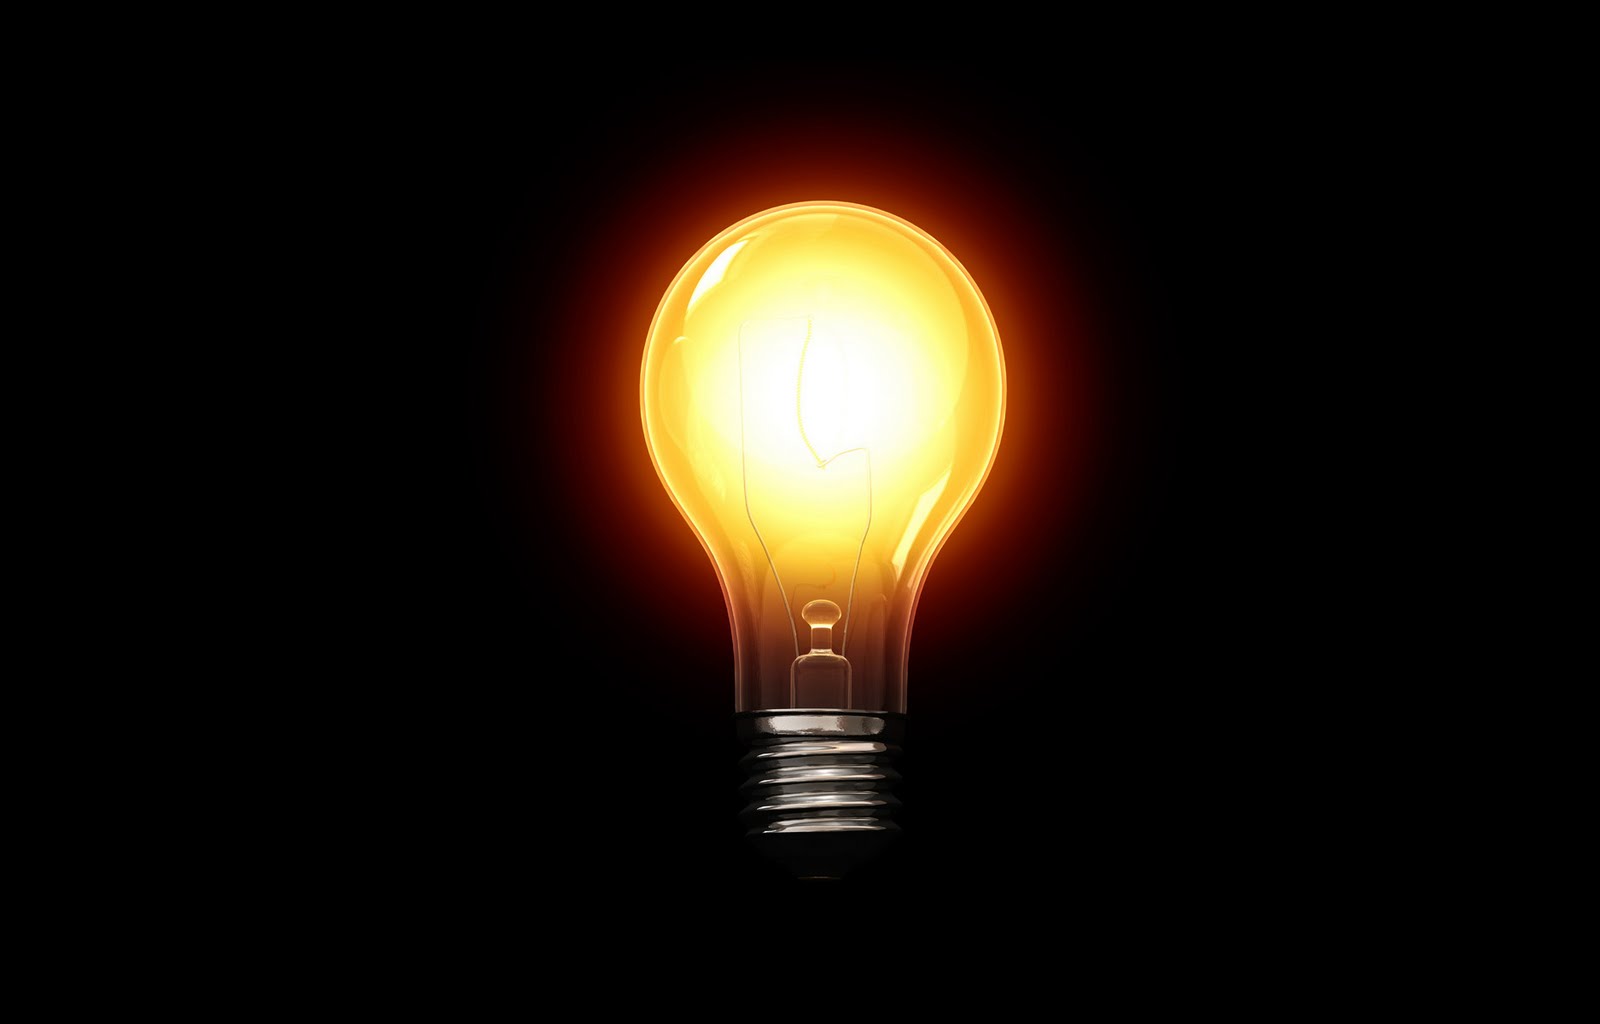 light wallpaper download,light bulb,lighting,incandescent light bulb,light,light fixture